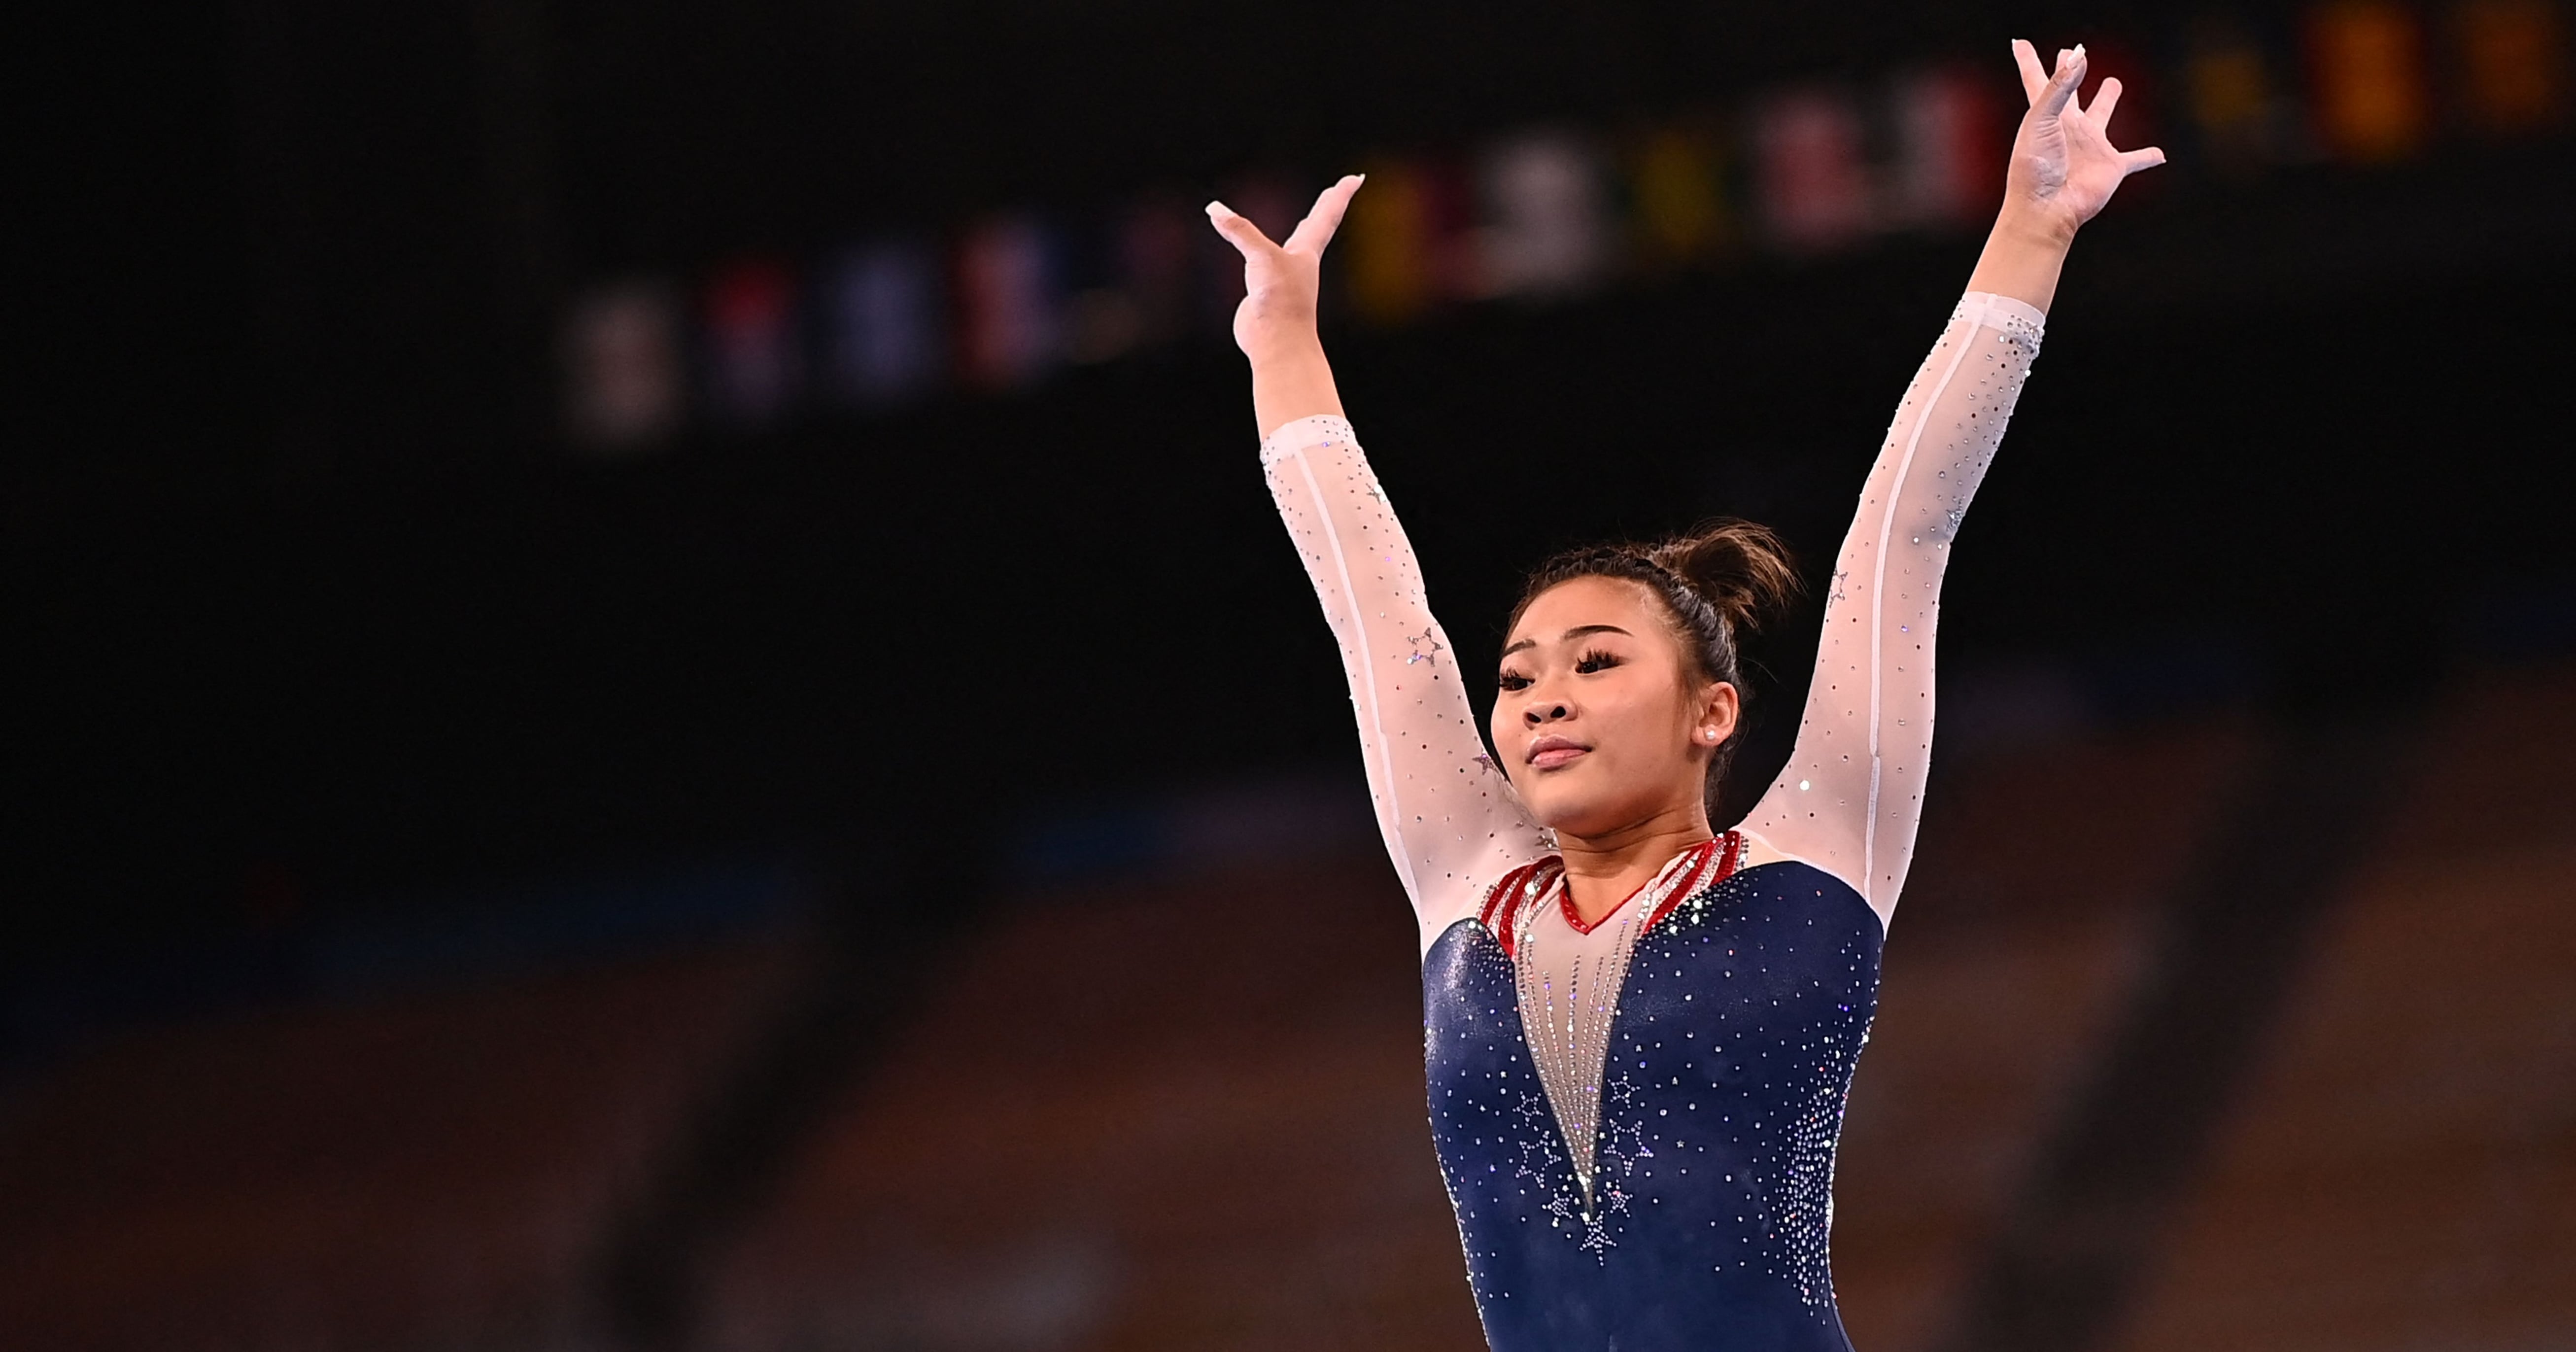 La gymnaste olympique Suni Lee parle d’eczéma et de santé mentale